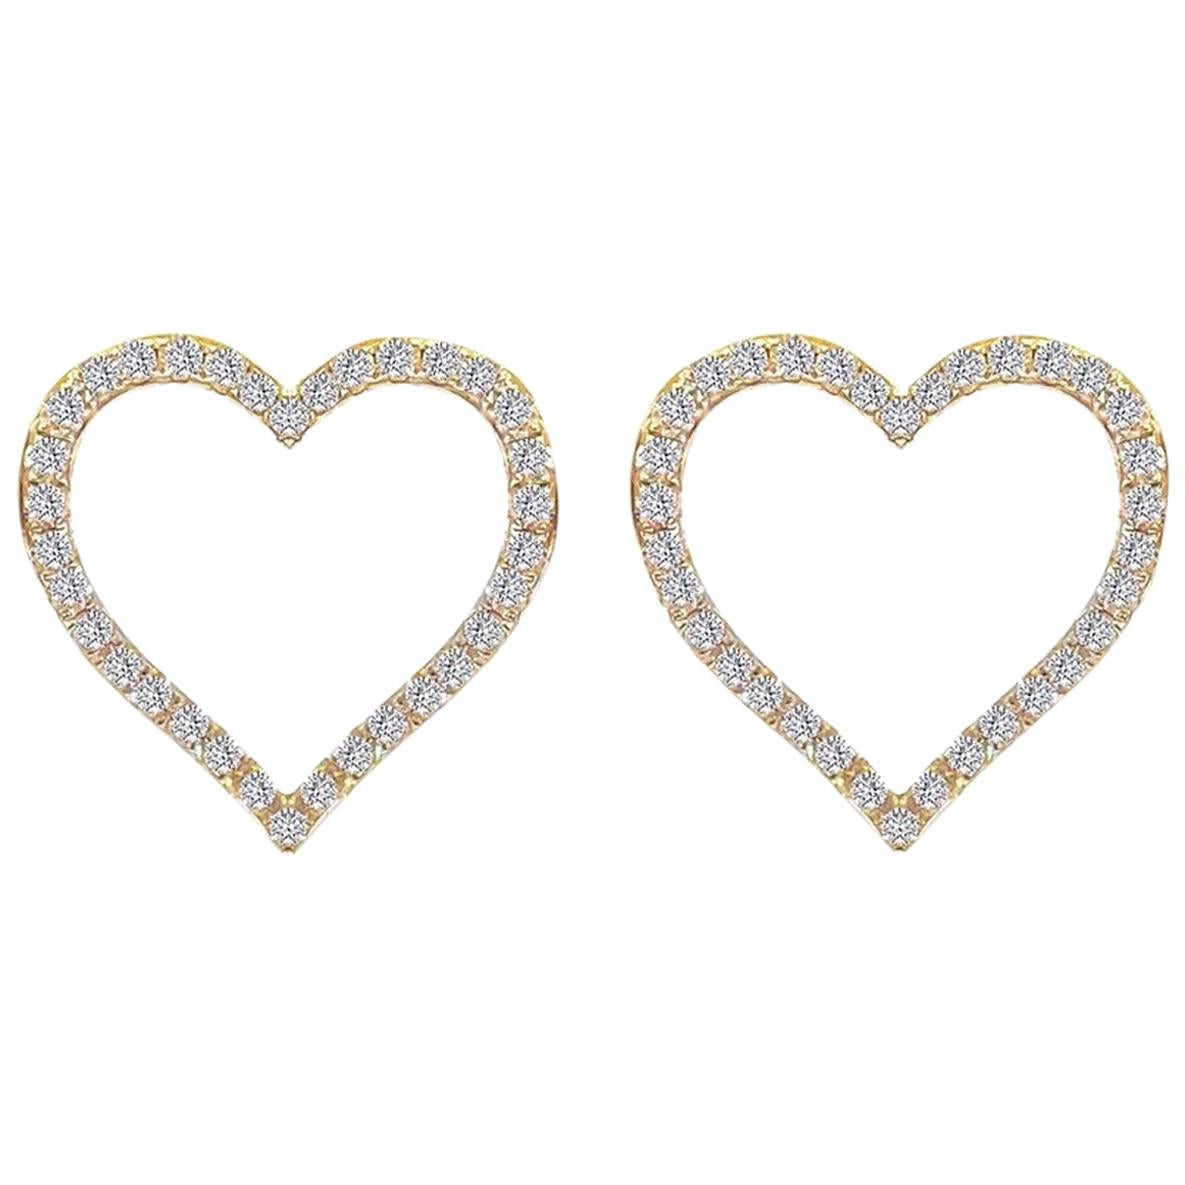 Diamond Heart Earring in 18 Karat Gold